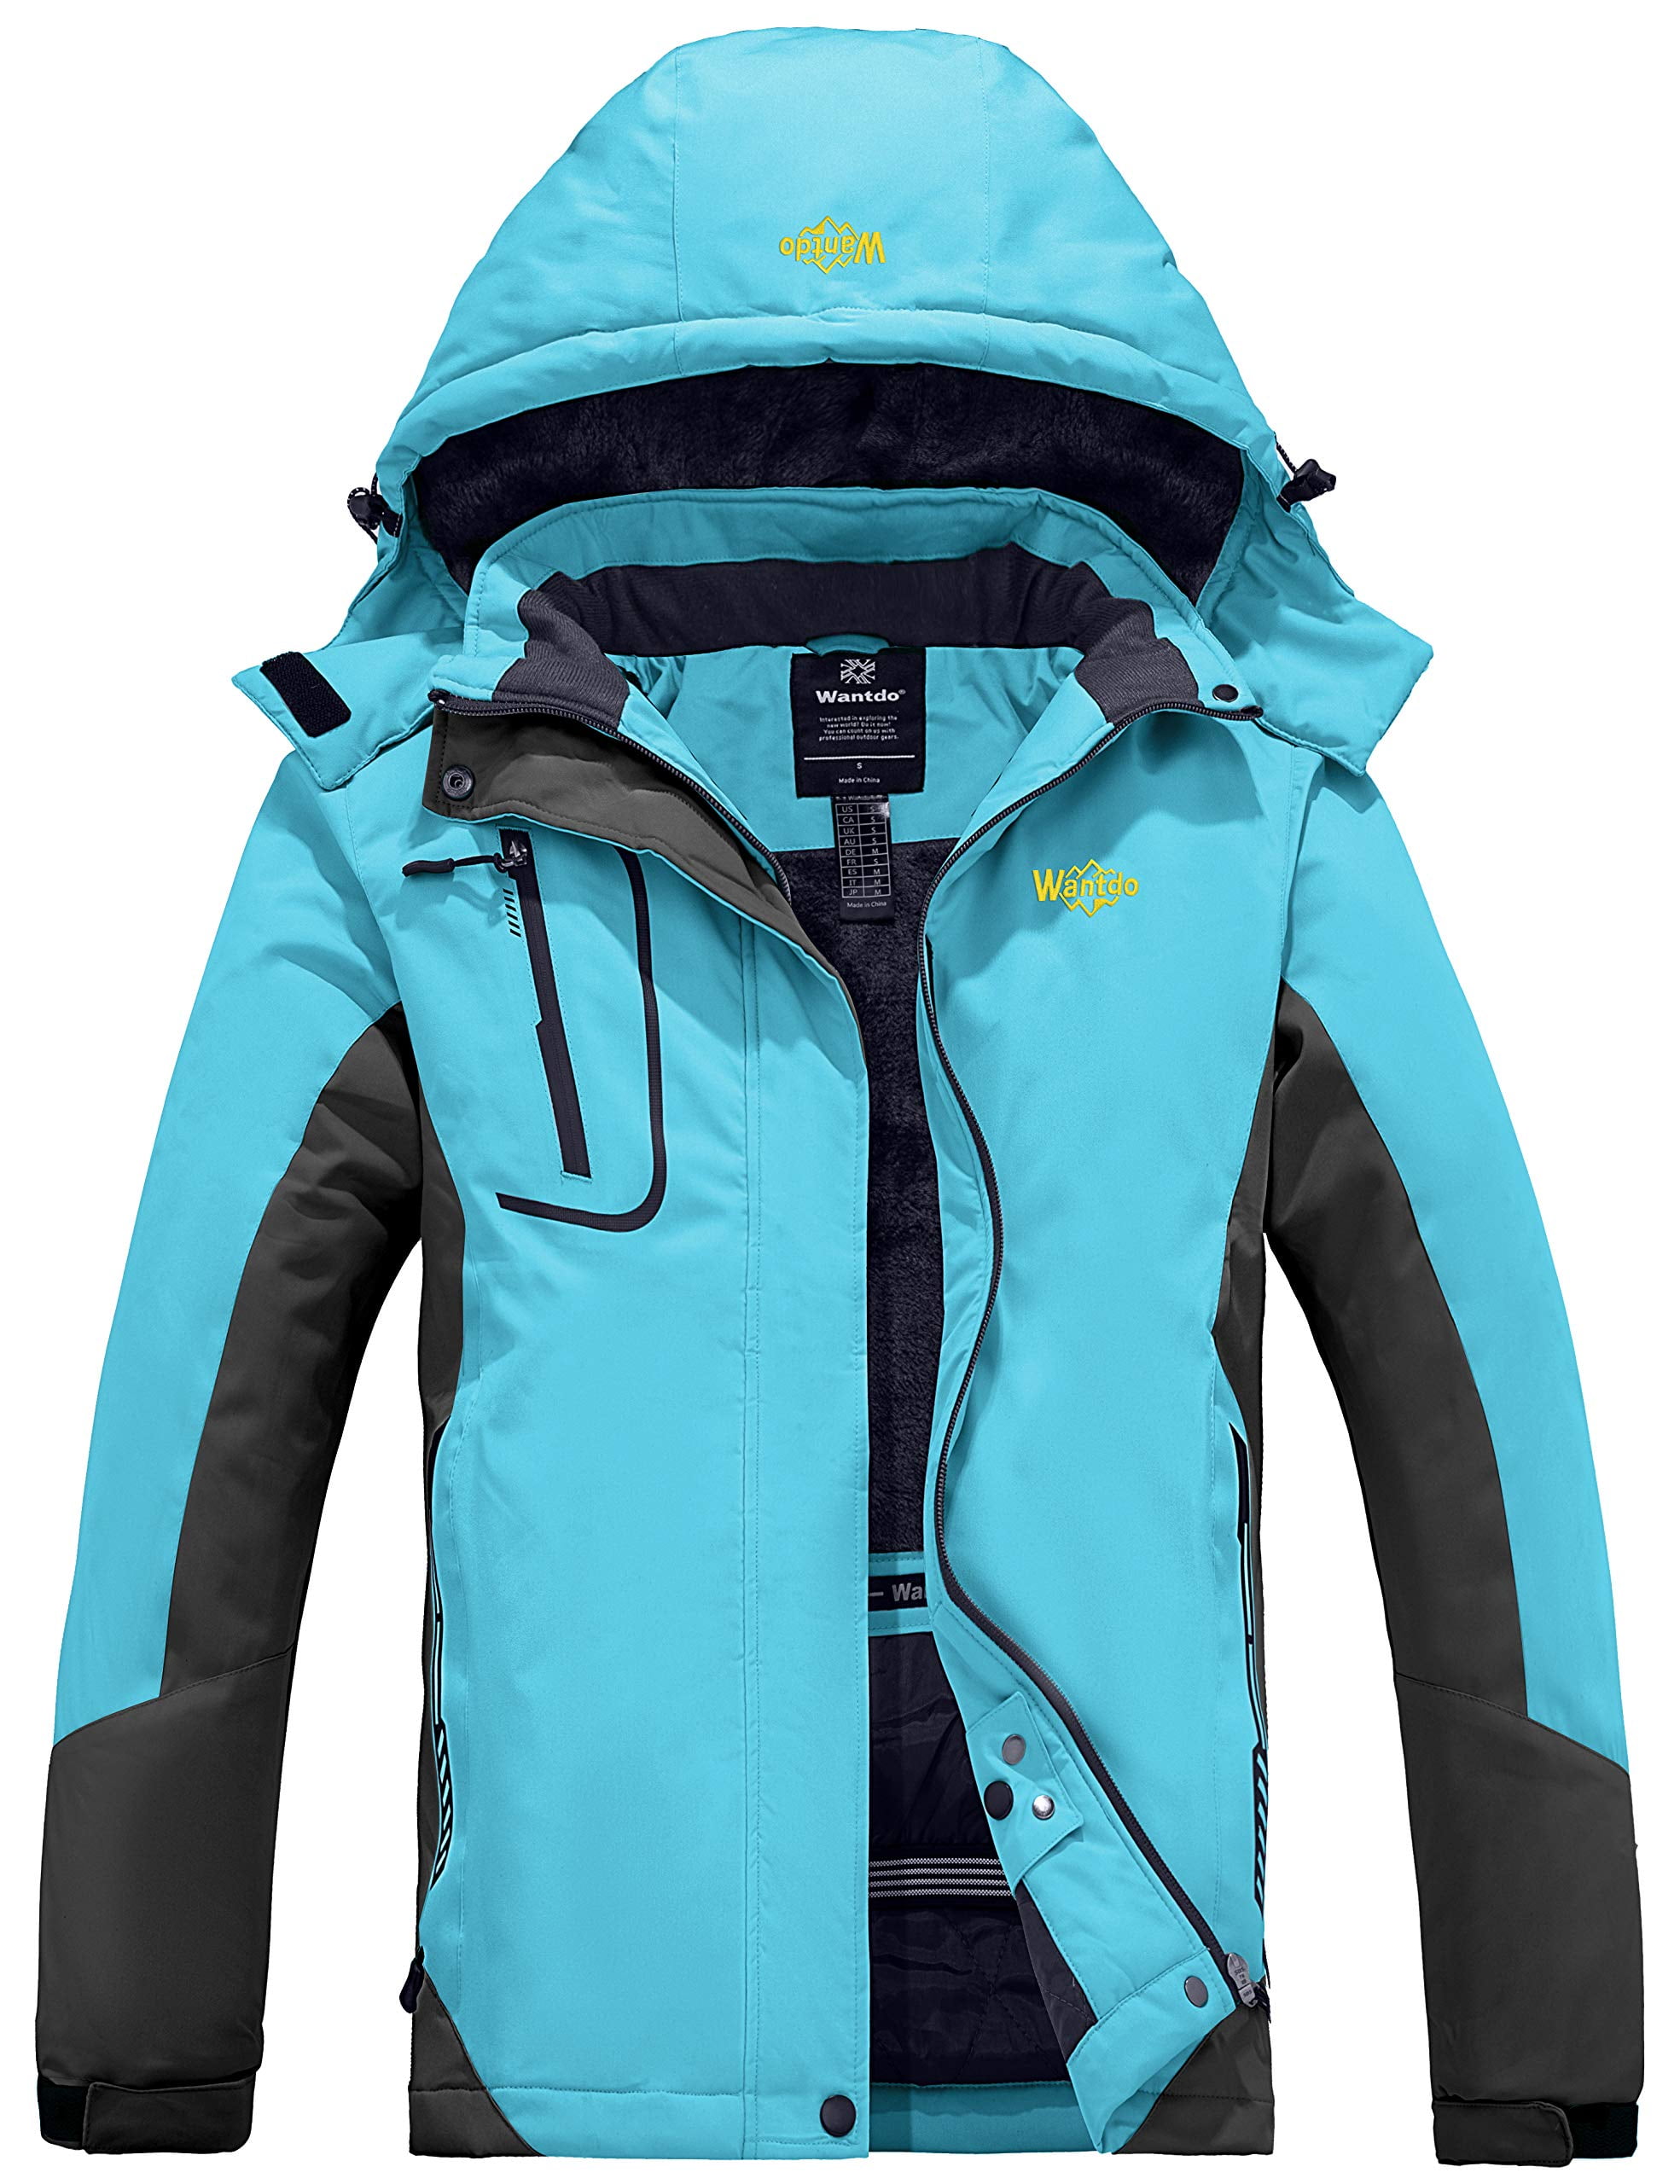 Wantdo Womens Warm Parka Mountain Ski Fleece Jacket Waterproof Rain Coat